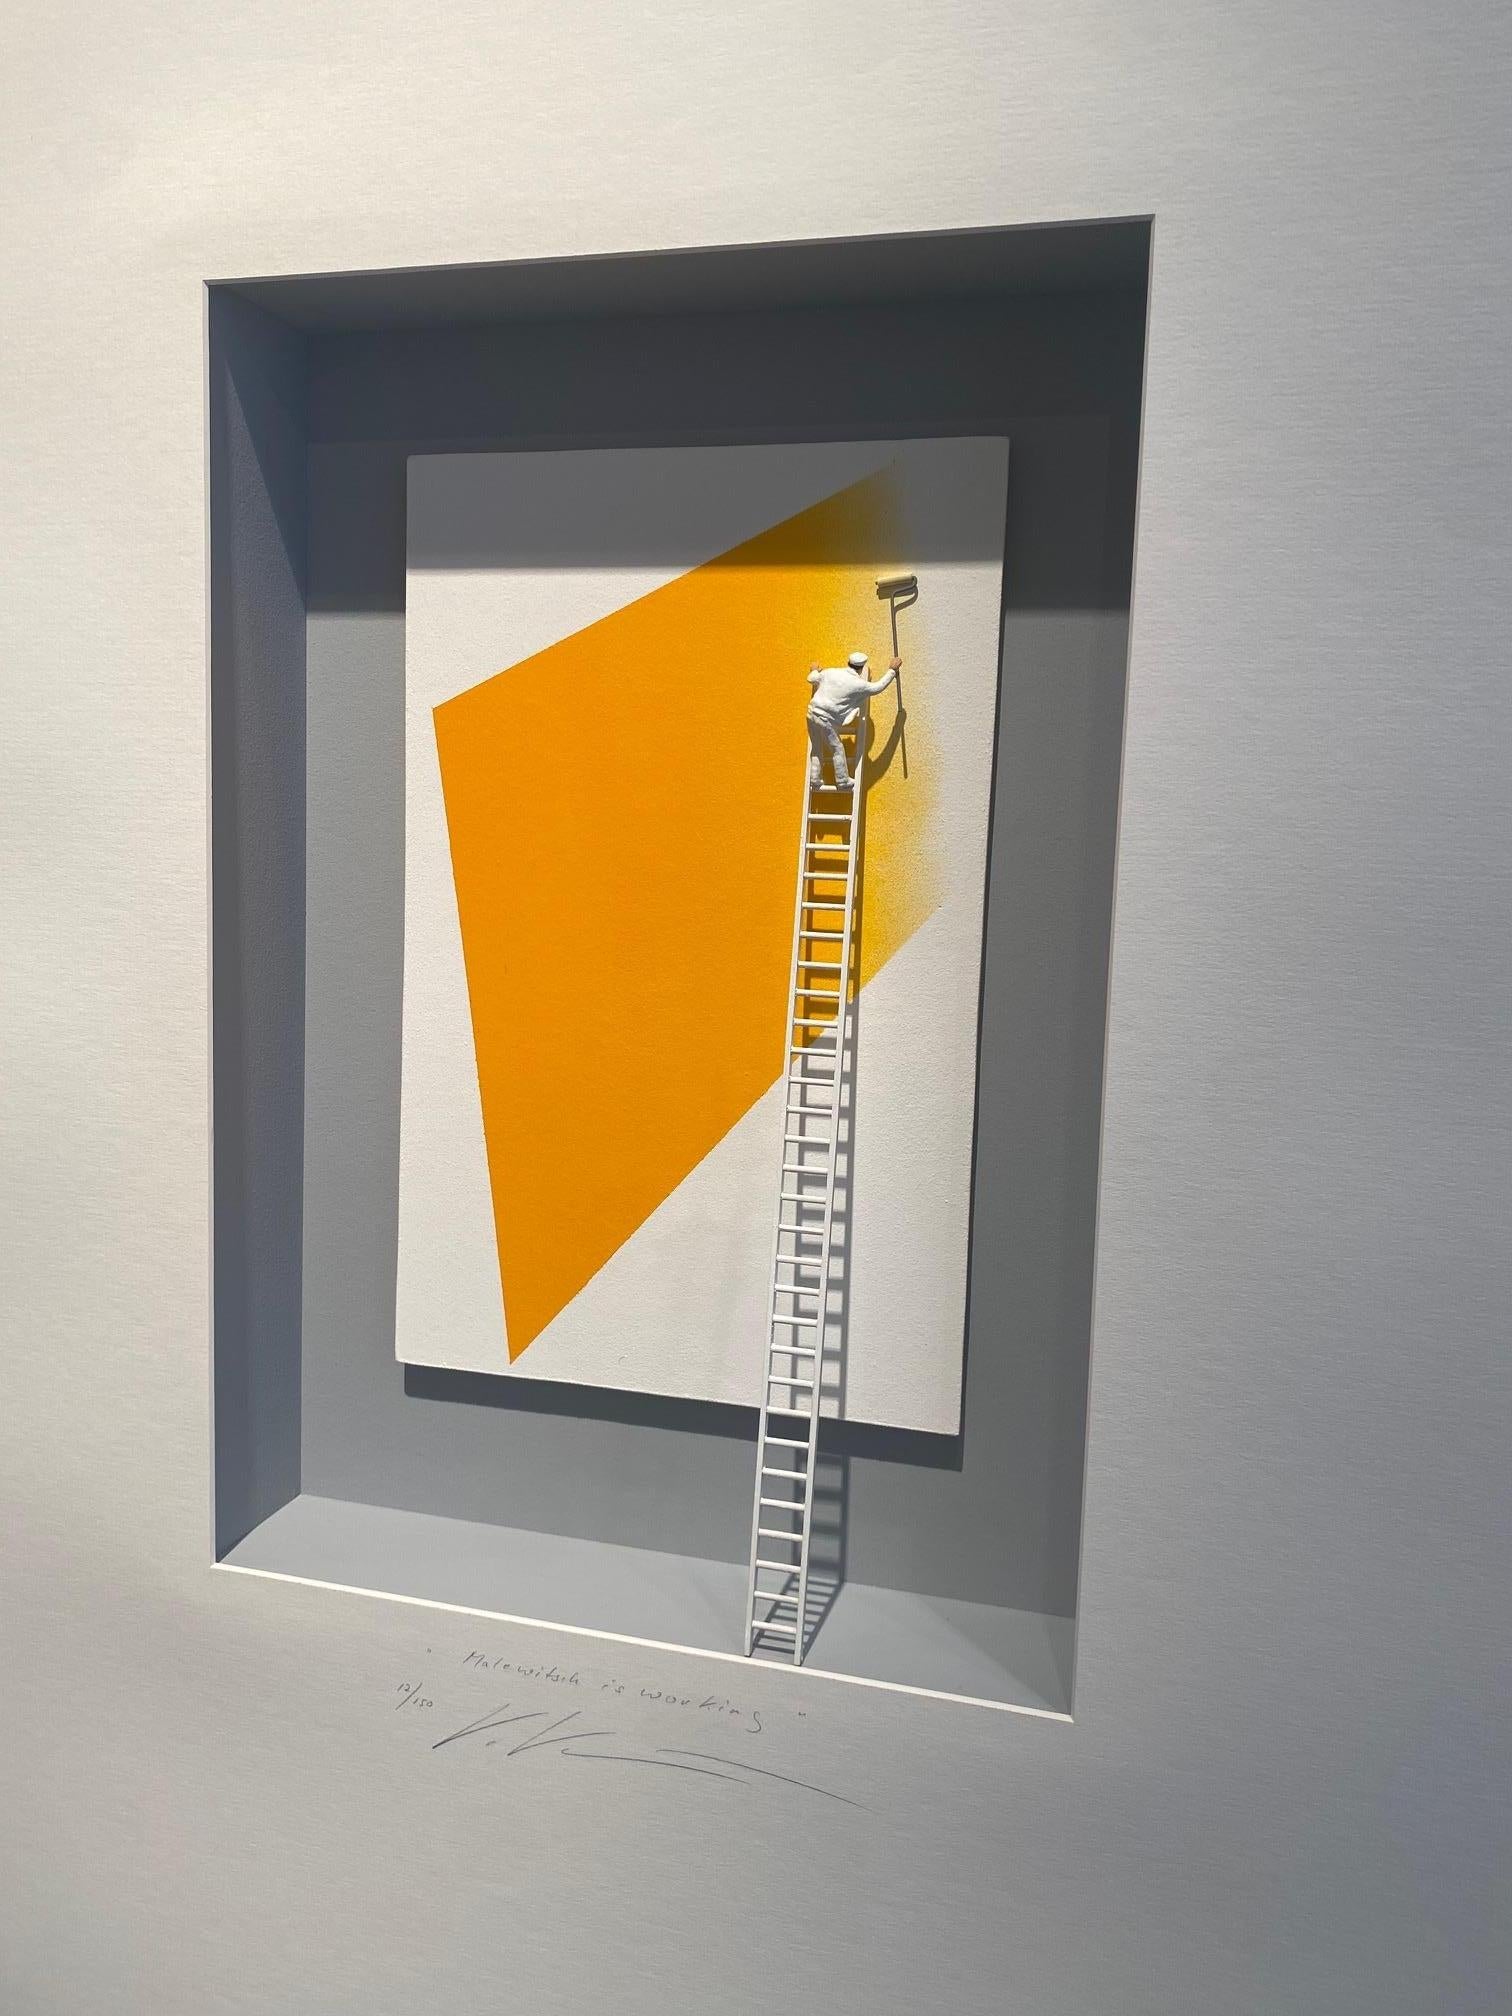 Malewitsch ist Working - zeitgenössisches abstraktes Kunstwerk, Hommage an Malewitsch  (Assemblage), Mixed Media Art, von Volker Kuhn